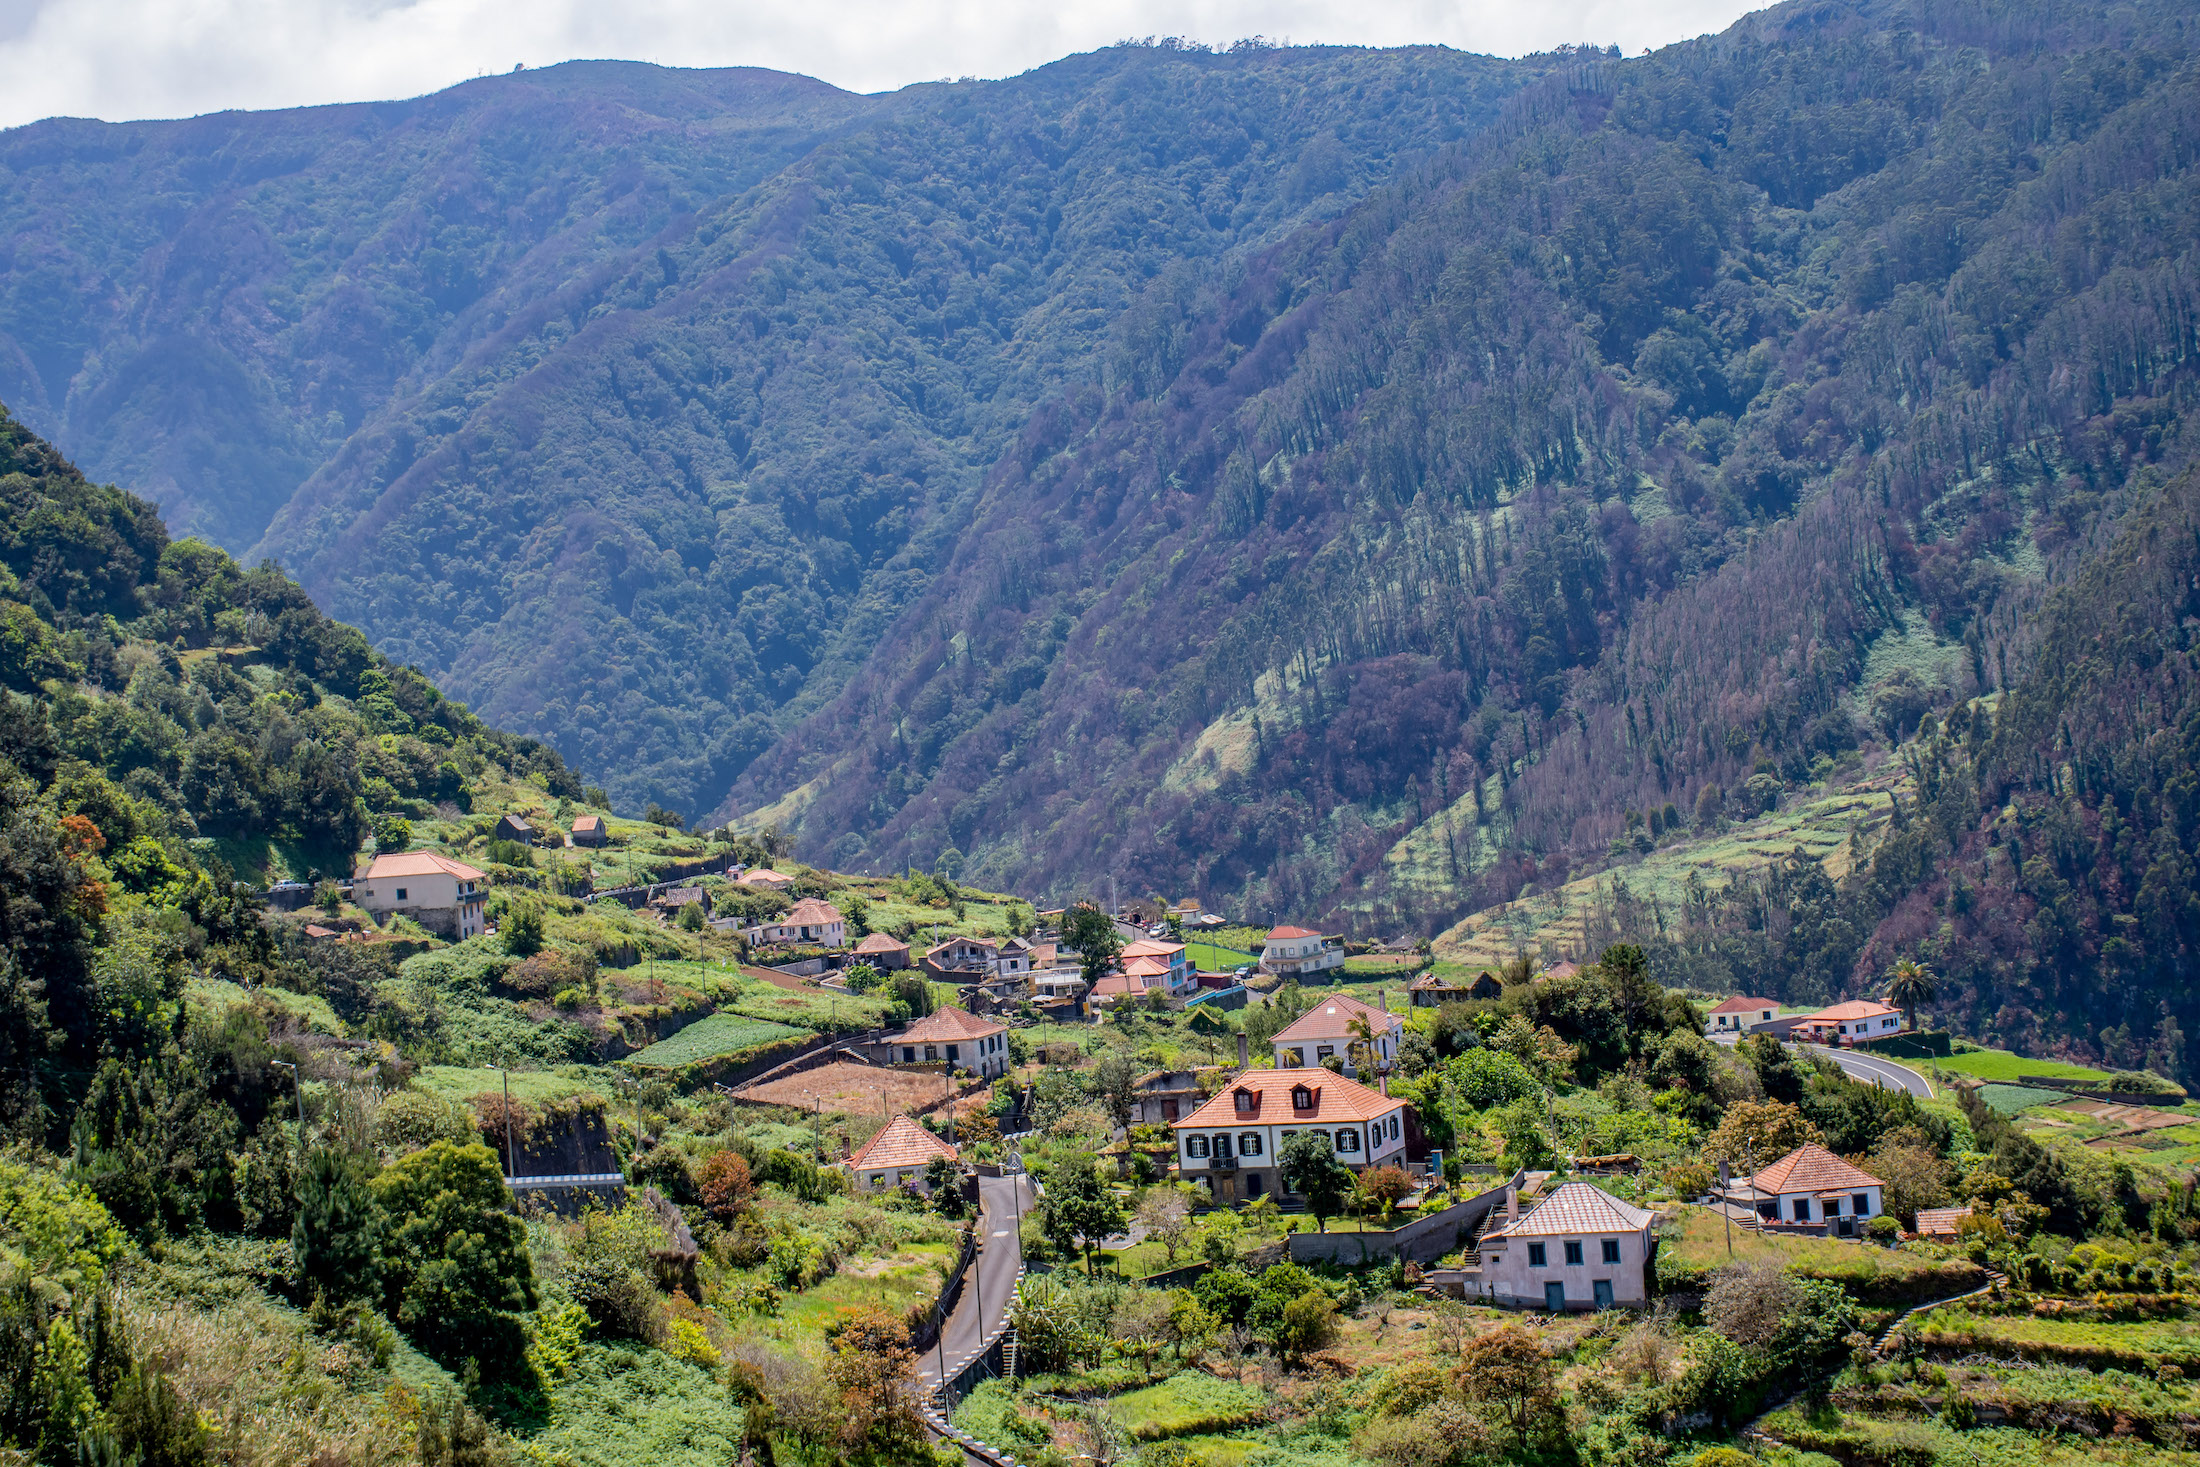 Onderweg terug naar Funchal verandert het weer nogmaals en genieten we weer van deze uitzichten